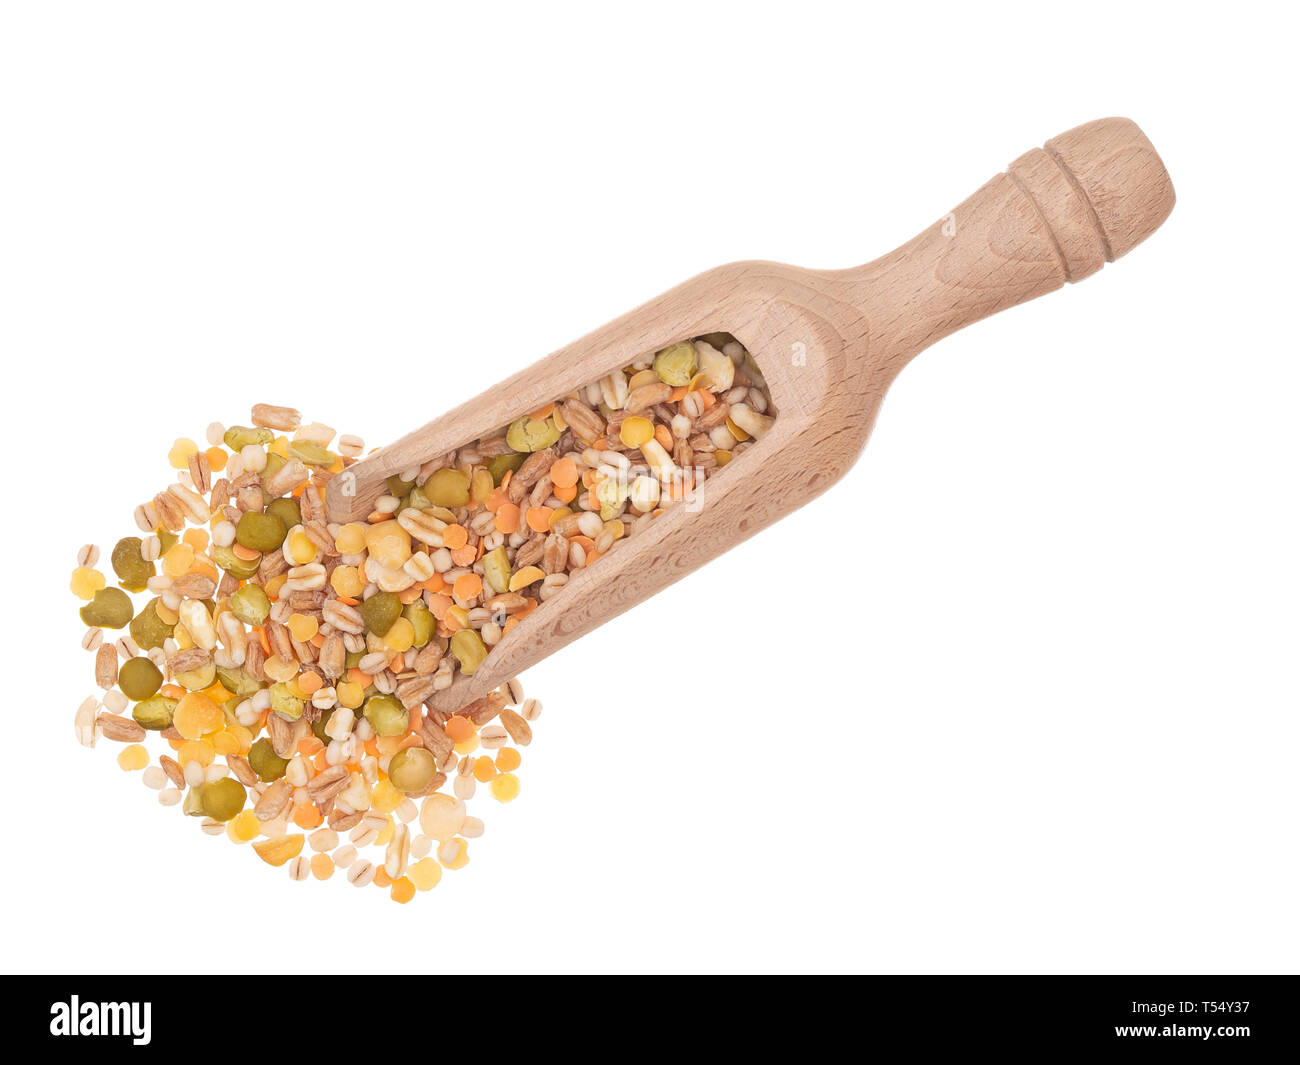 Getreide und Bohnen, Hülsenfrüchte mischen. Heap mit Schaufel, auf weißem Hintergrund. Stockfoto